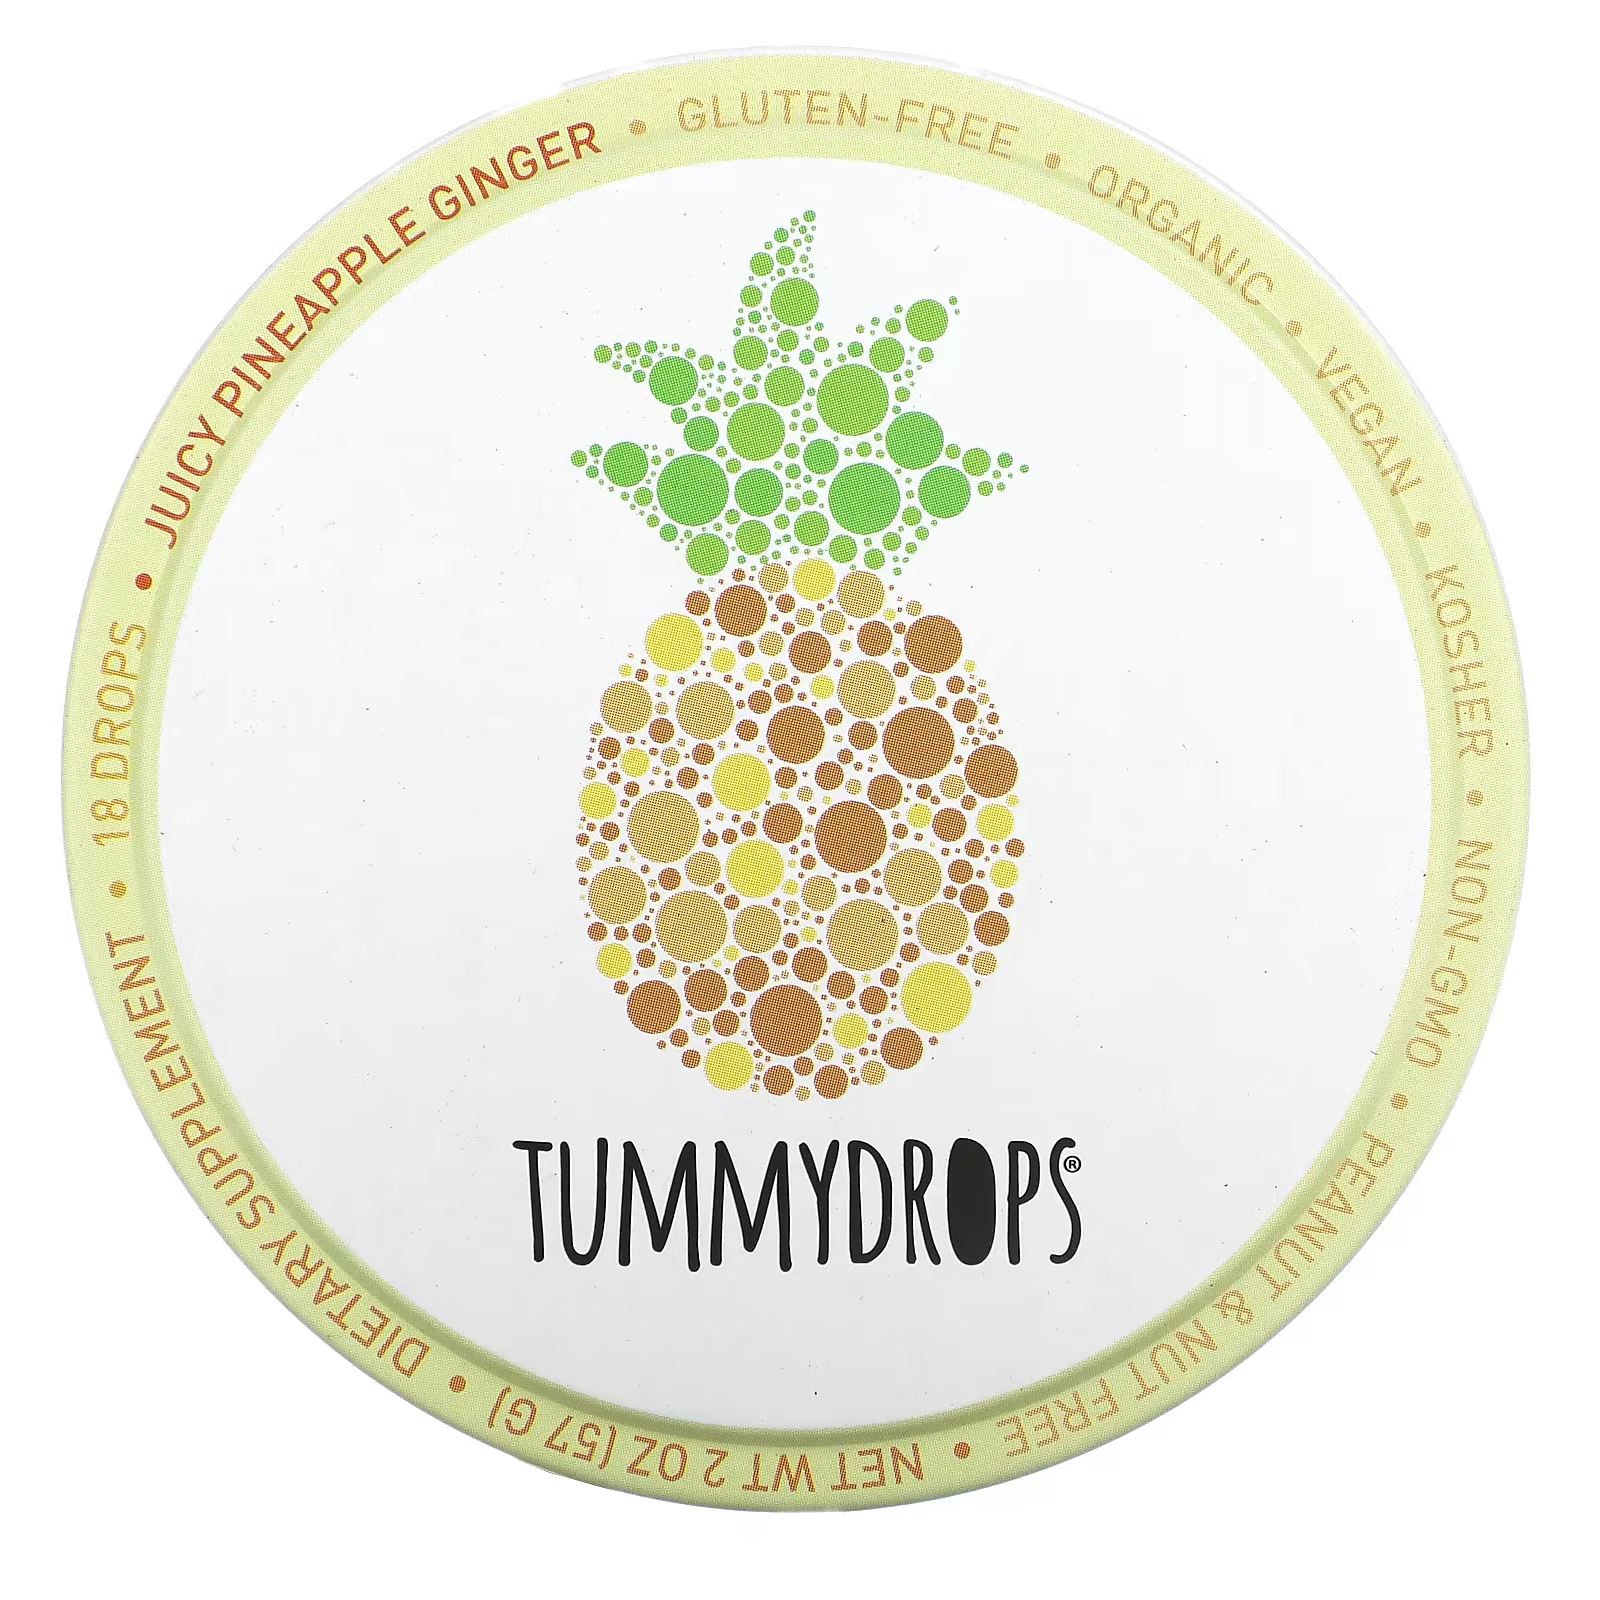 Капли имбирные Tummydrops ананасовые, 18 капель tummydrops органическая карамель тыква имбирь 18 капель 57 г 2 унции